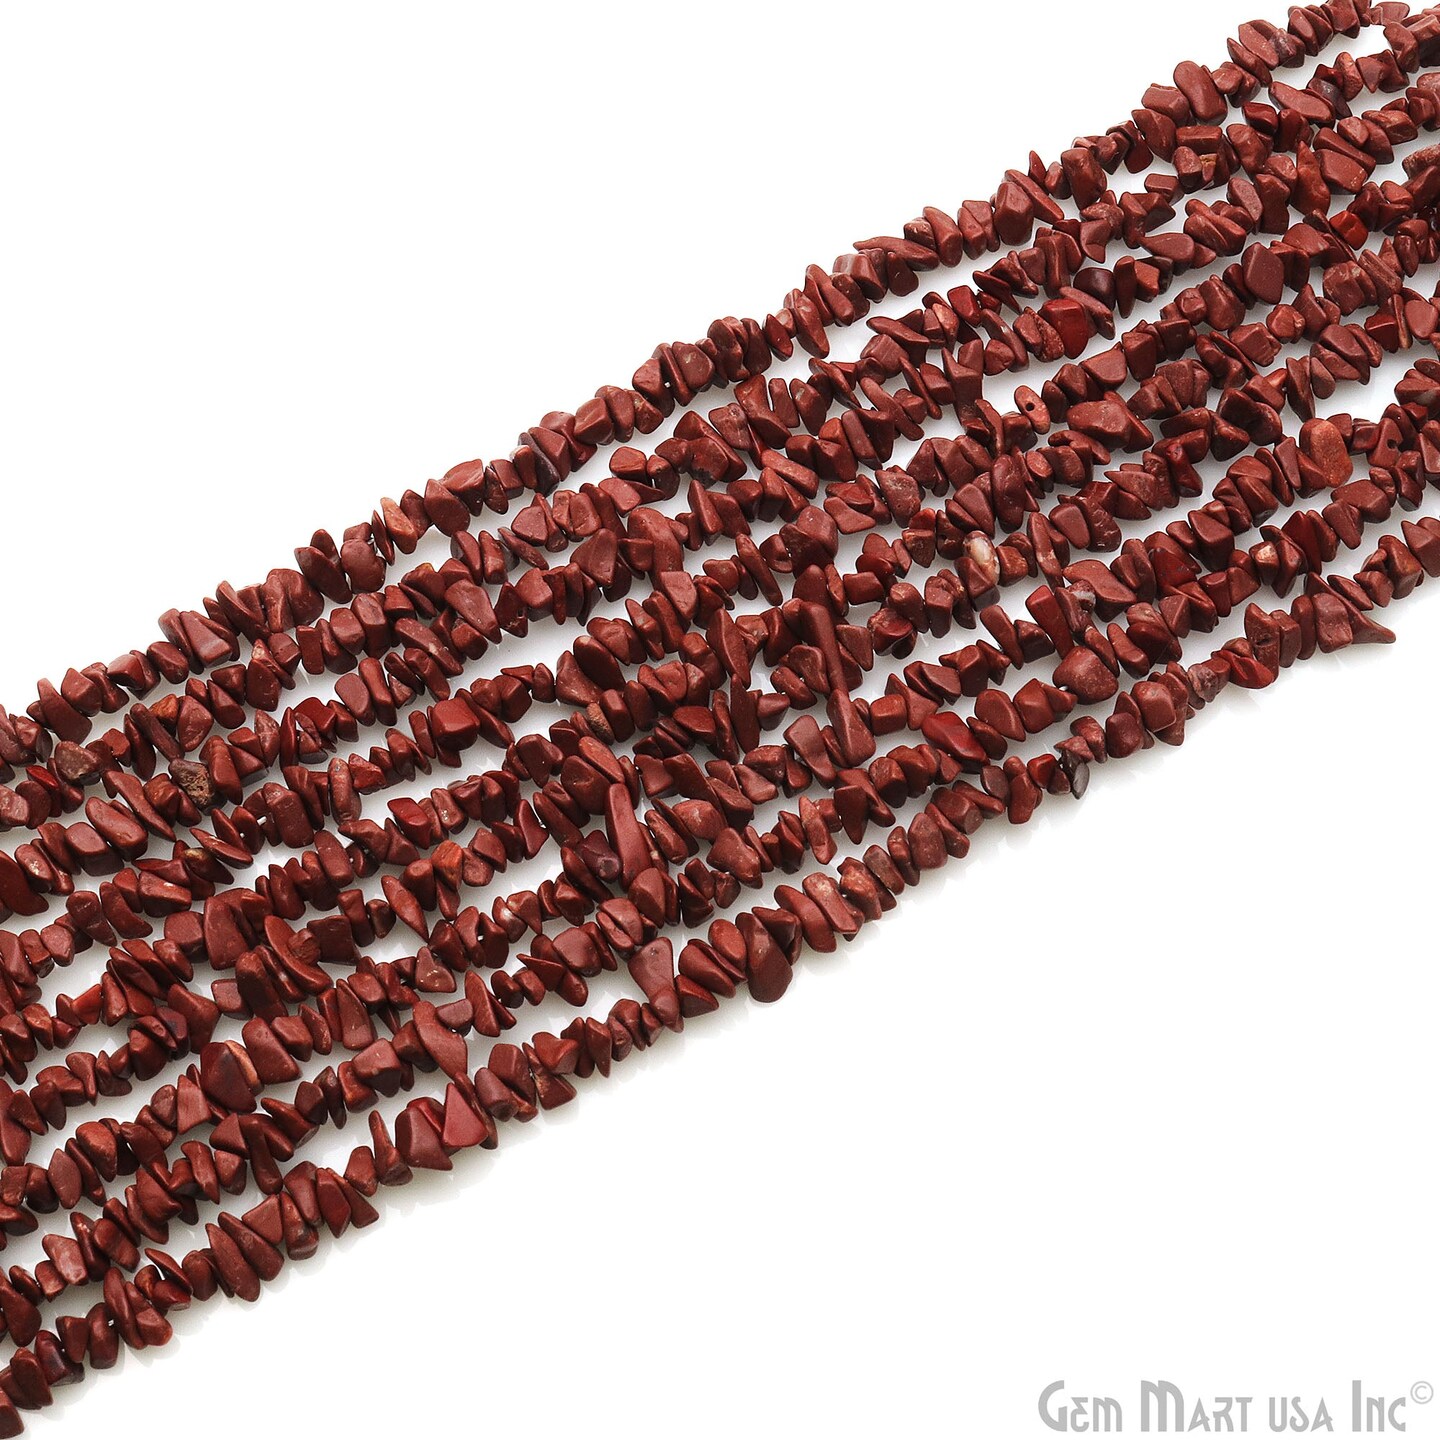 Red Jasper Chip Beads, 34 Inch, Natural Chip Strands, Drilled Strung Nugget Beads, 3-7mm, Polished, GemMartUSA (CHRJ-70001)